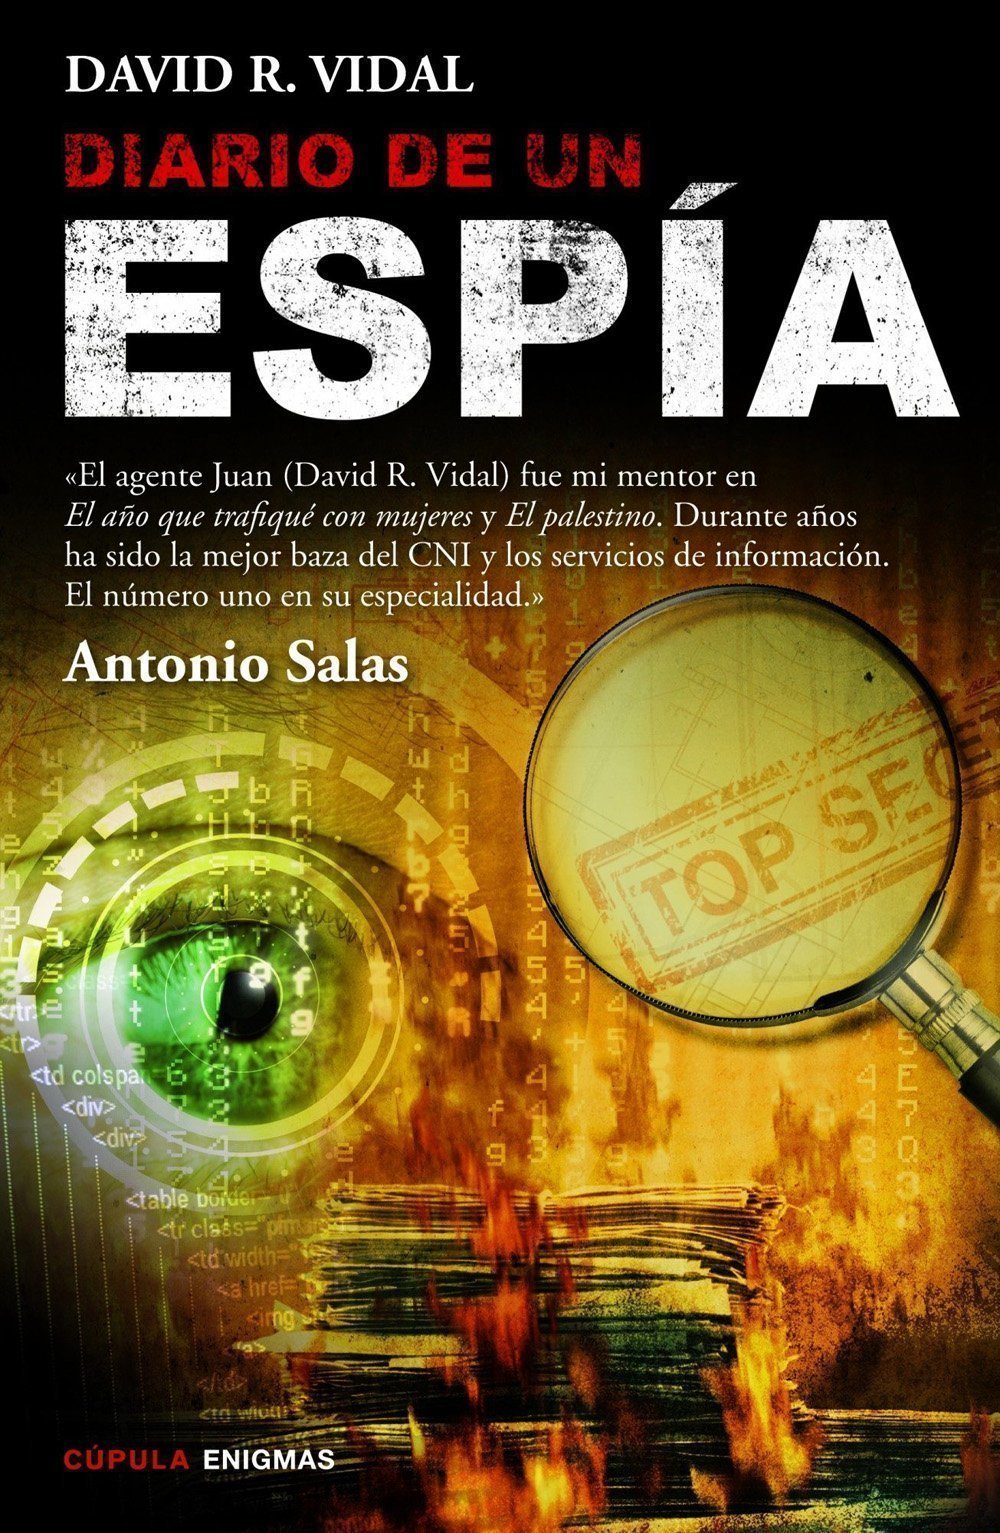 Diario de un espía, de David R. Vidal